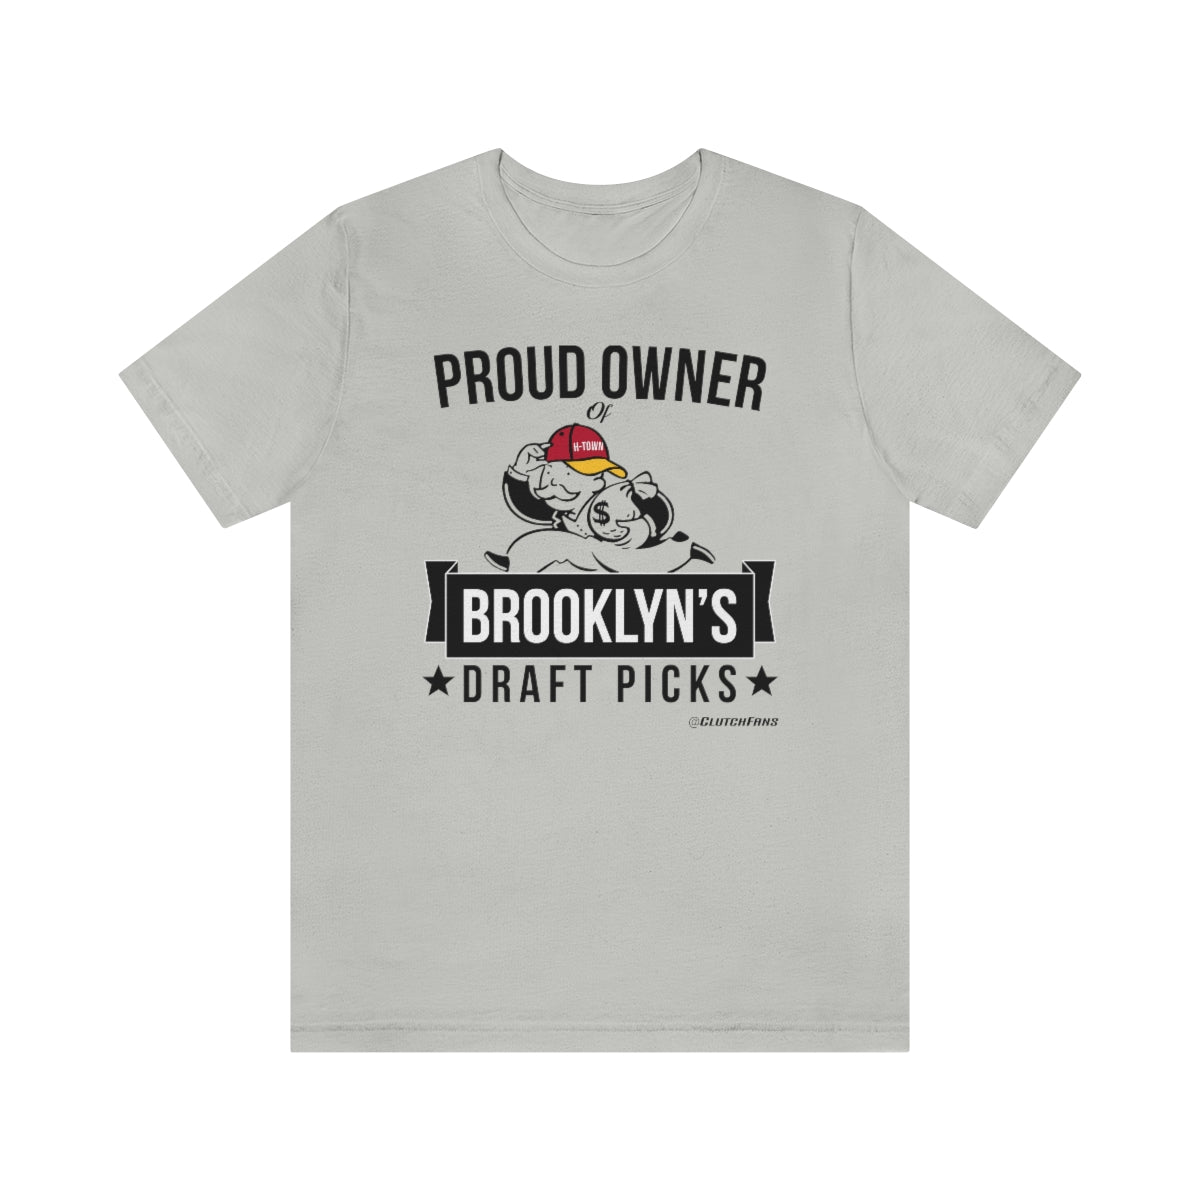 Proud Owner of Brooklyn's Draft Picks